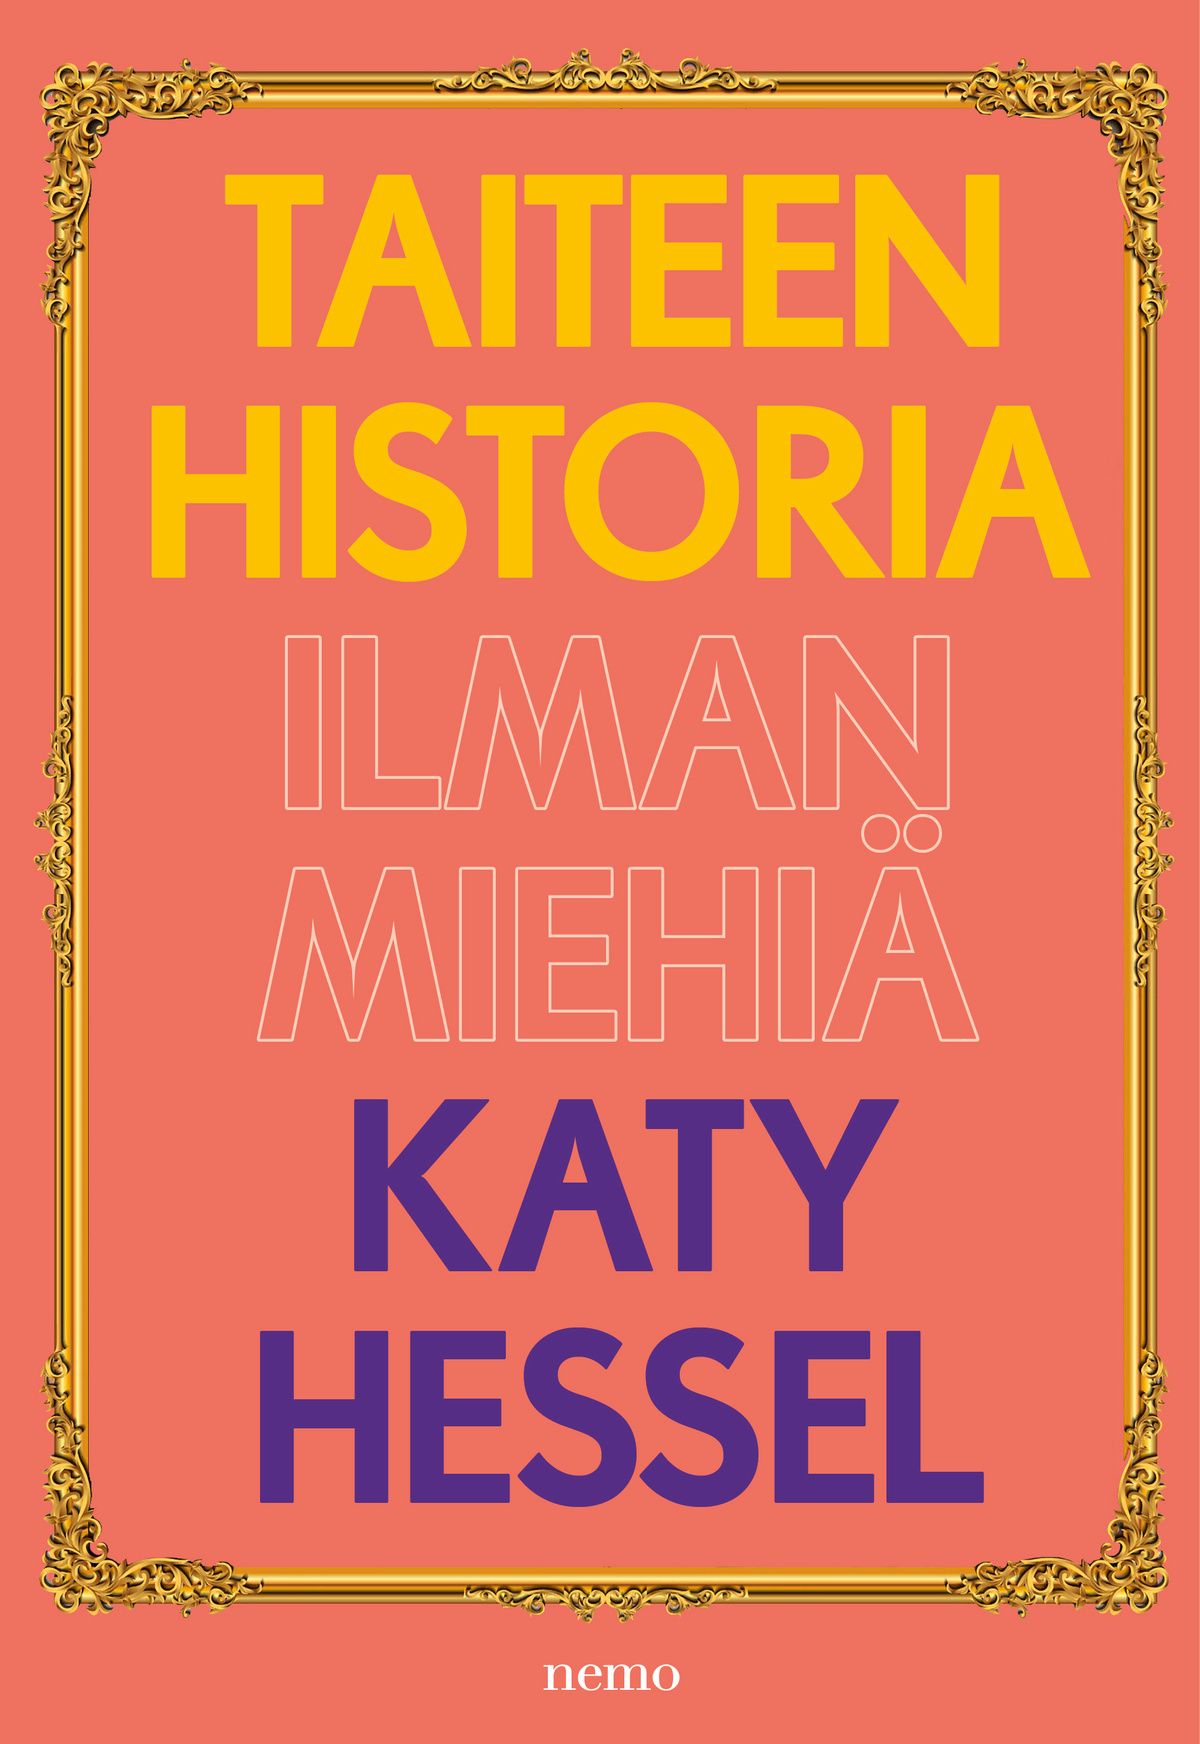 Katy Hessel : Taiteen historia ilman miehiä